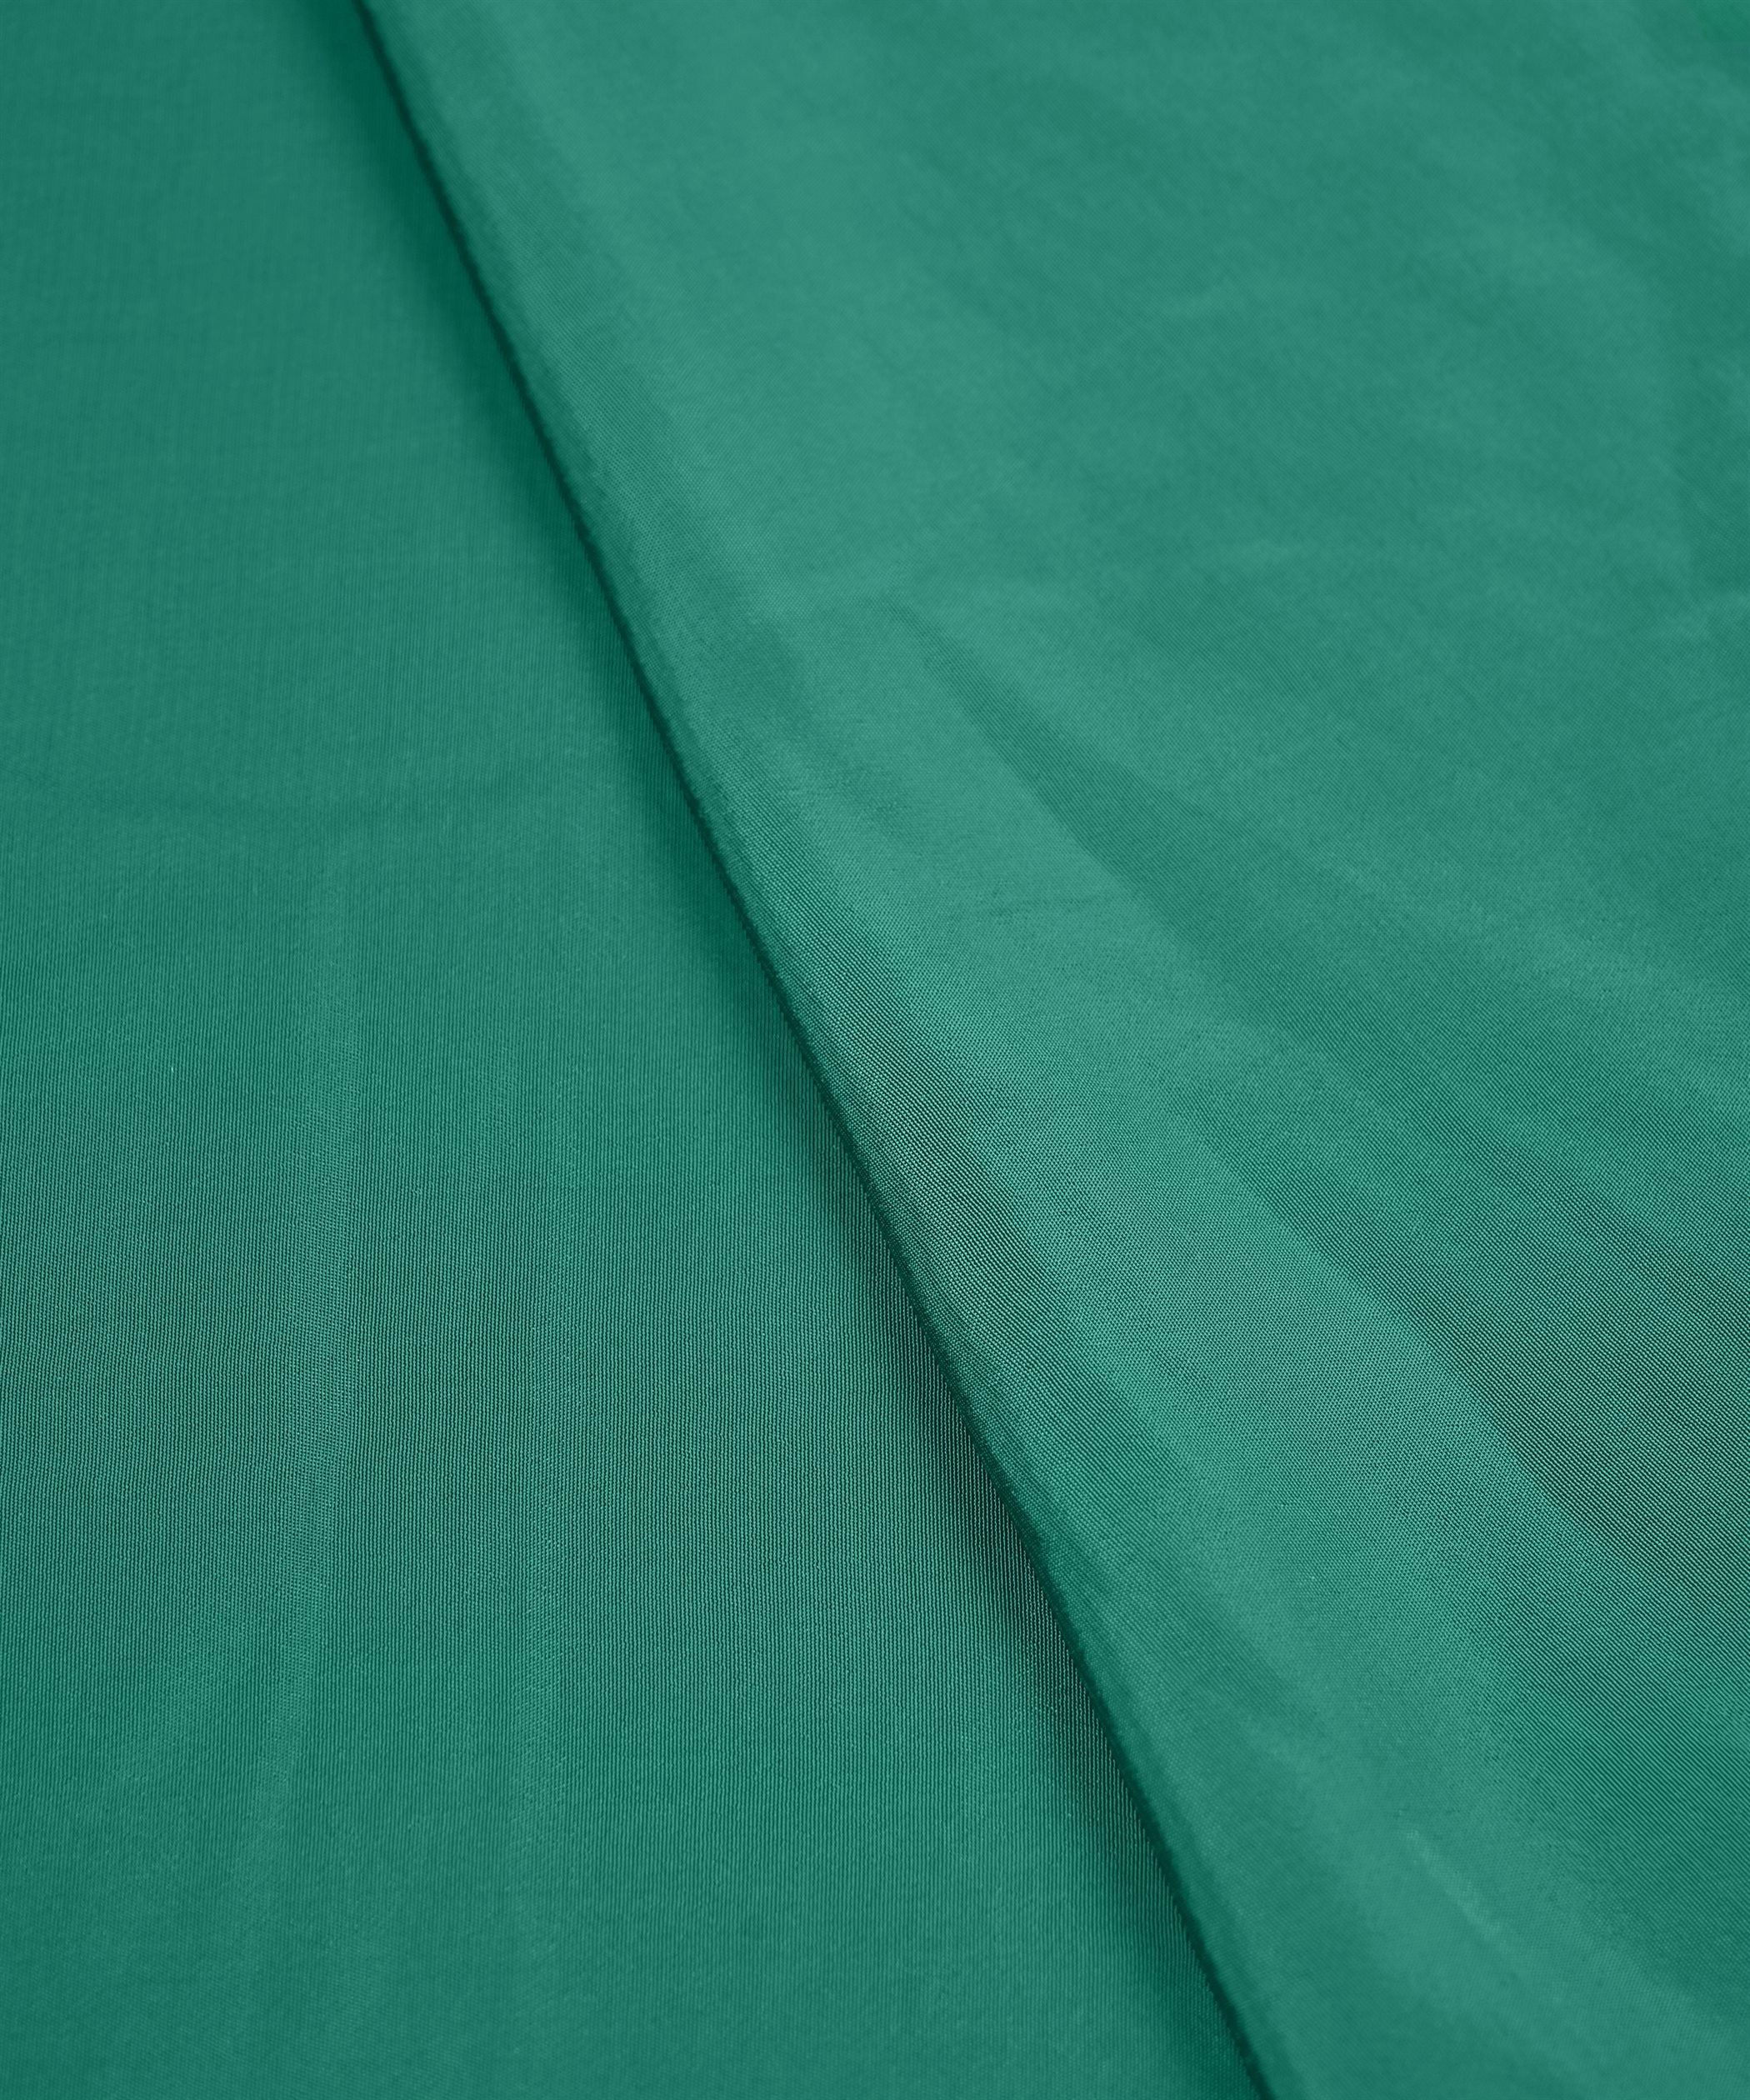 Aqua Green Plain Dyed American Crepe Fabric